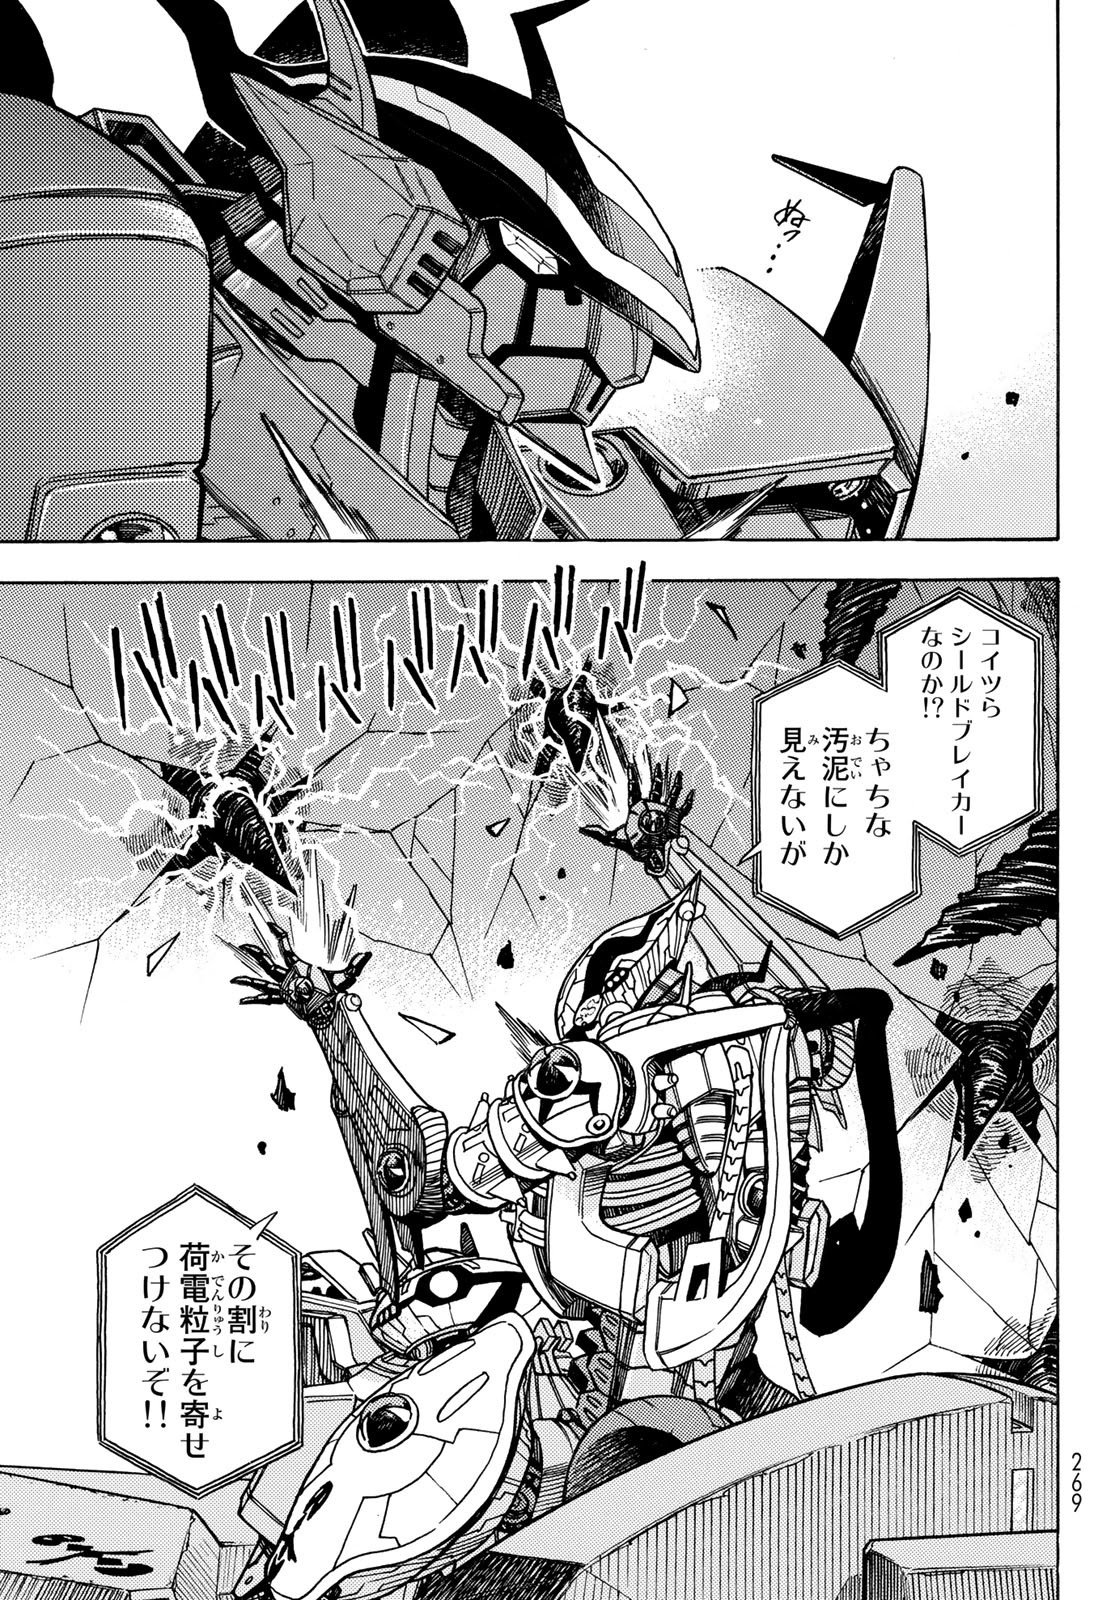 Mugou no Schnell Gear: Chikyuugai Kisouka AI - Chapter 45 - Page 5